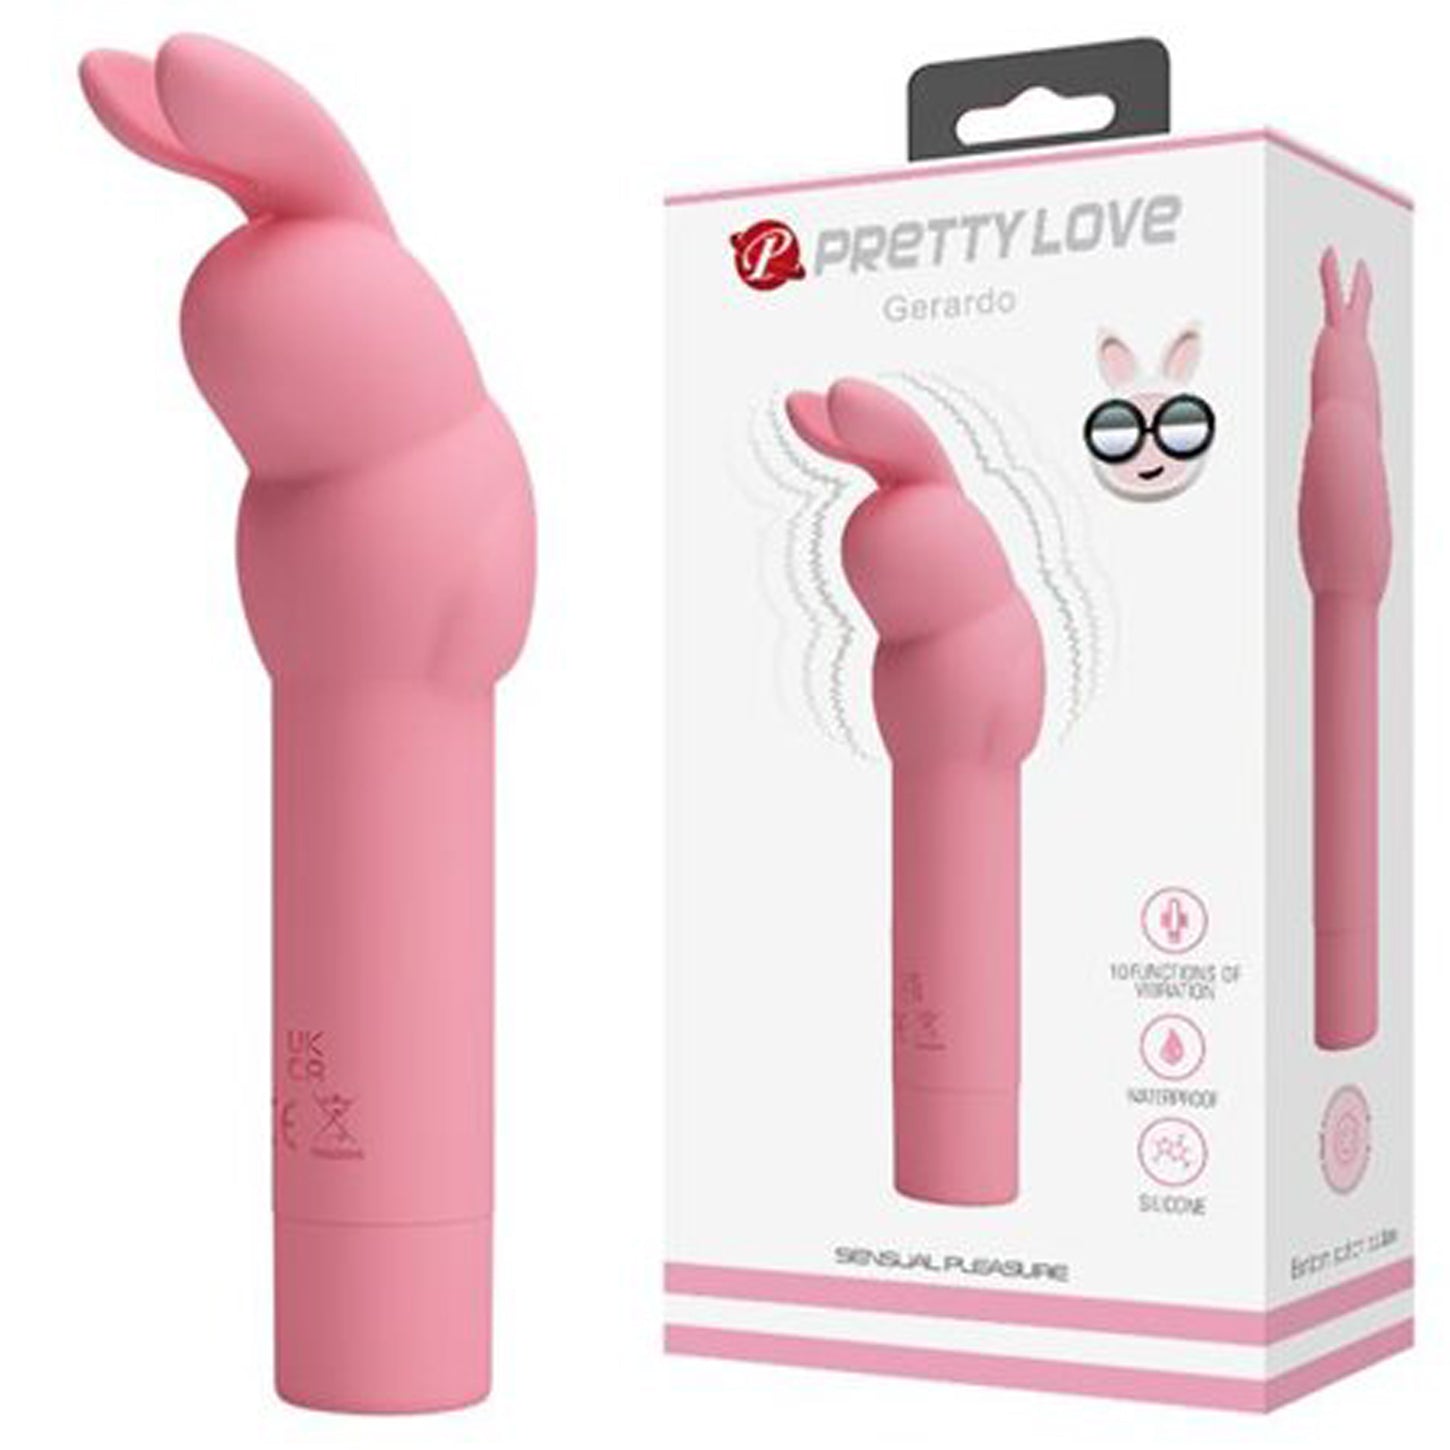 Pretty Love Gerardo Bunny - Pink-4